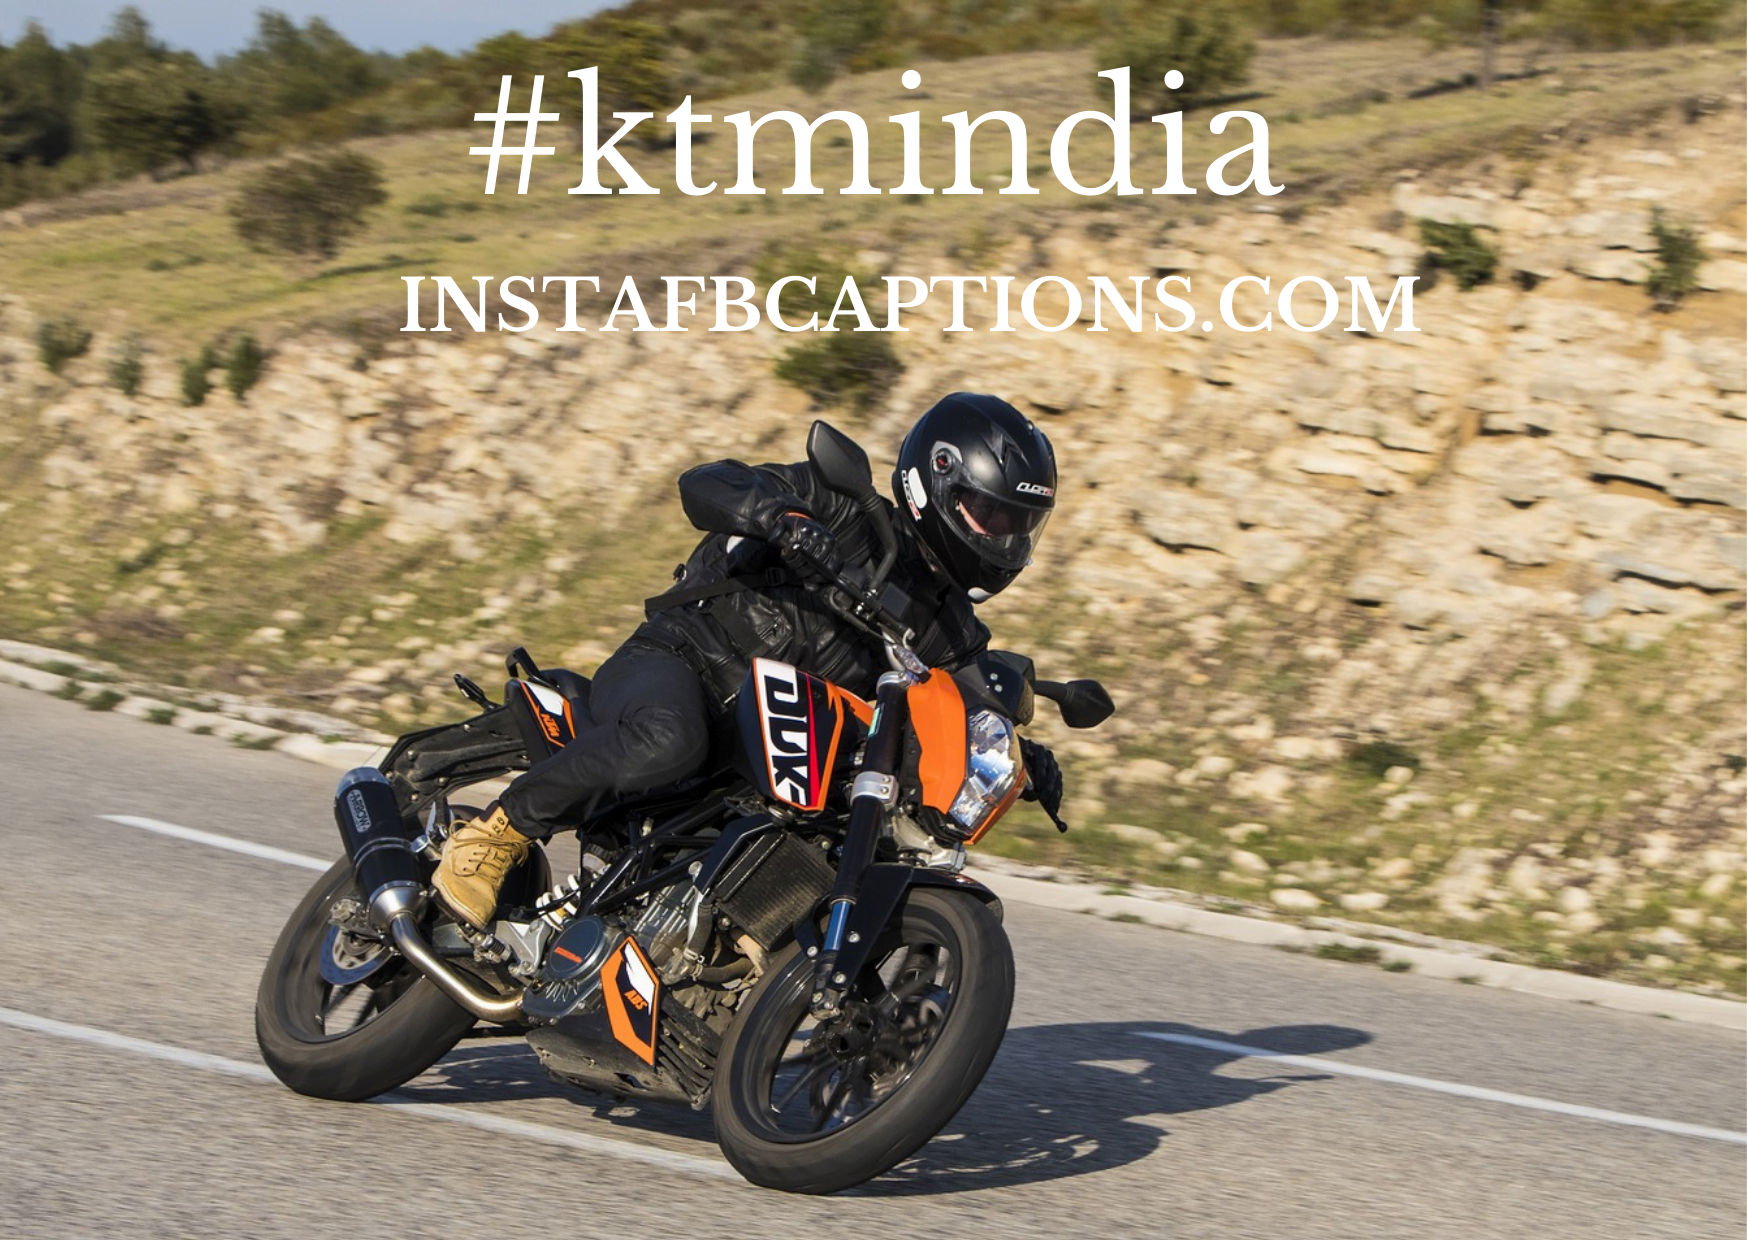 Famous Ktm Hashtags For Instagram  - Famous KTM Hashtags for Instagram - [New] KTM Instagram Captions for Super Bike Photos